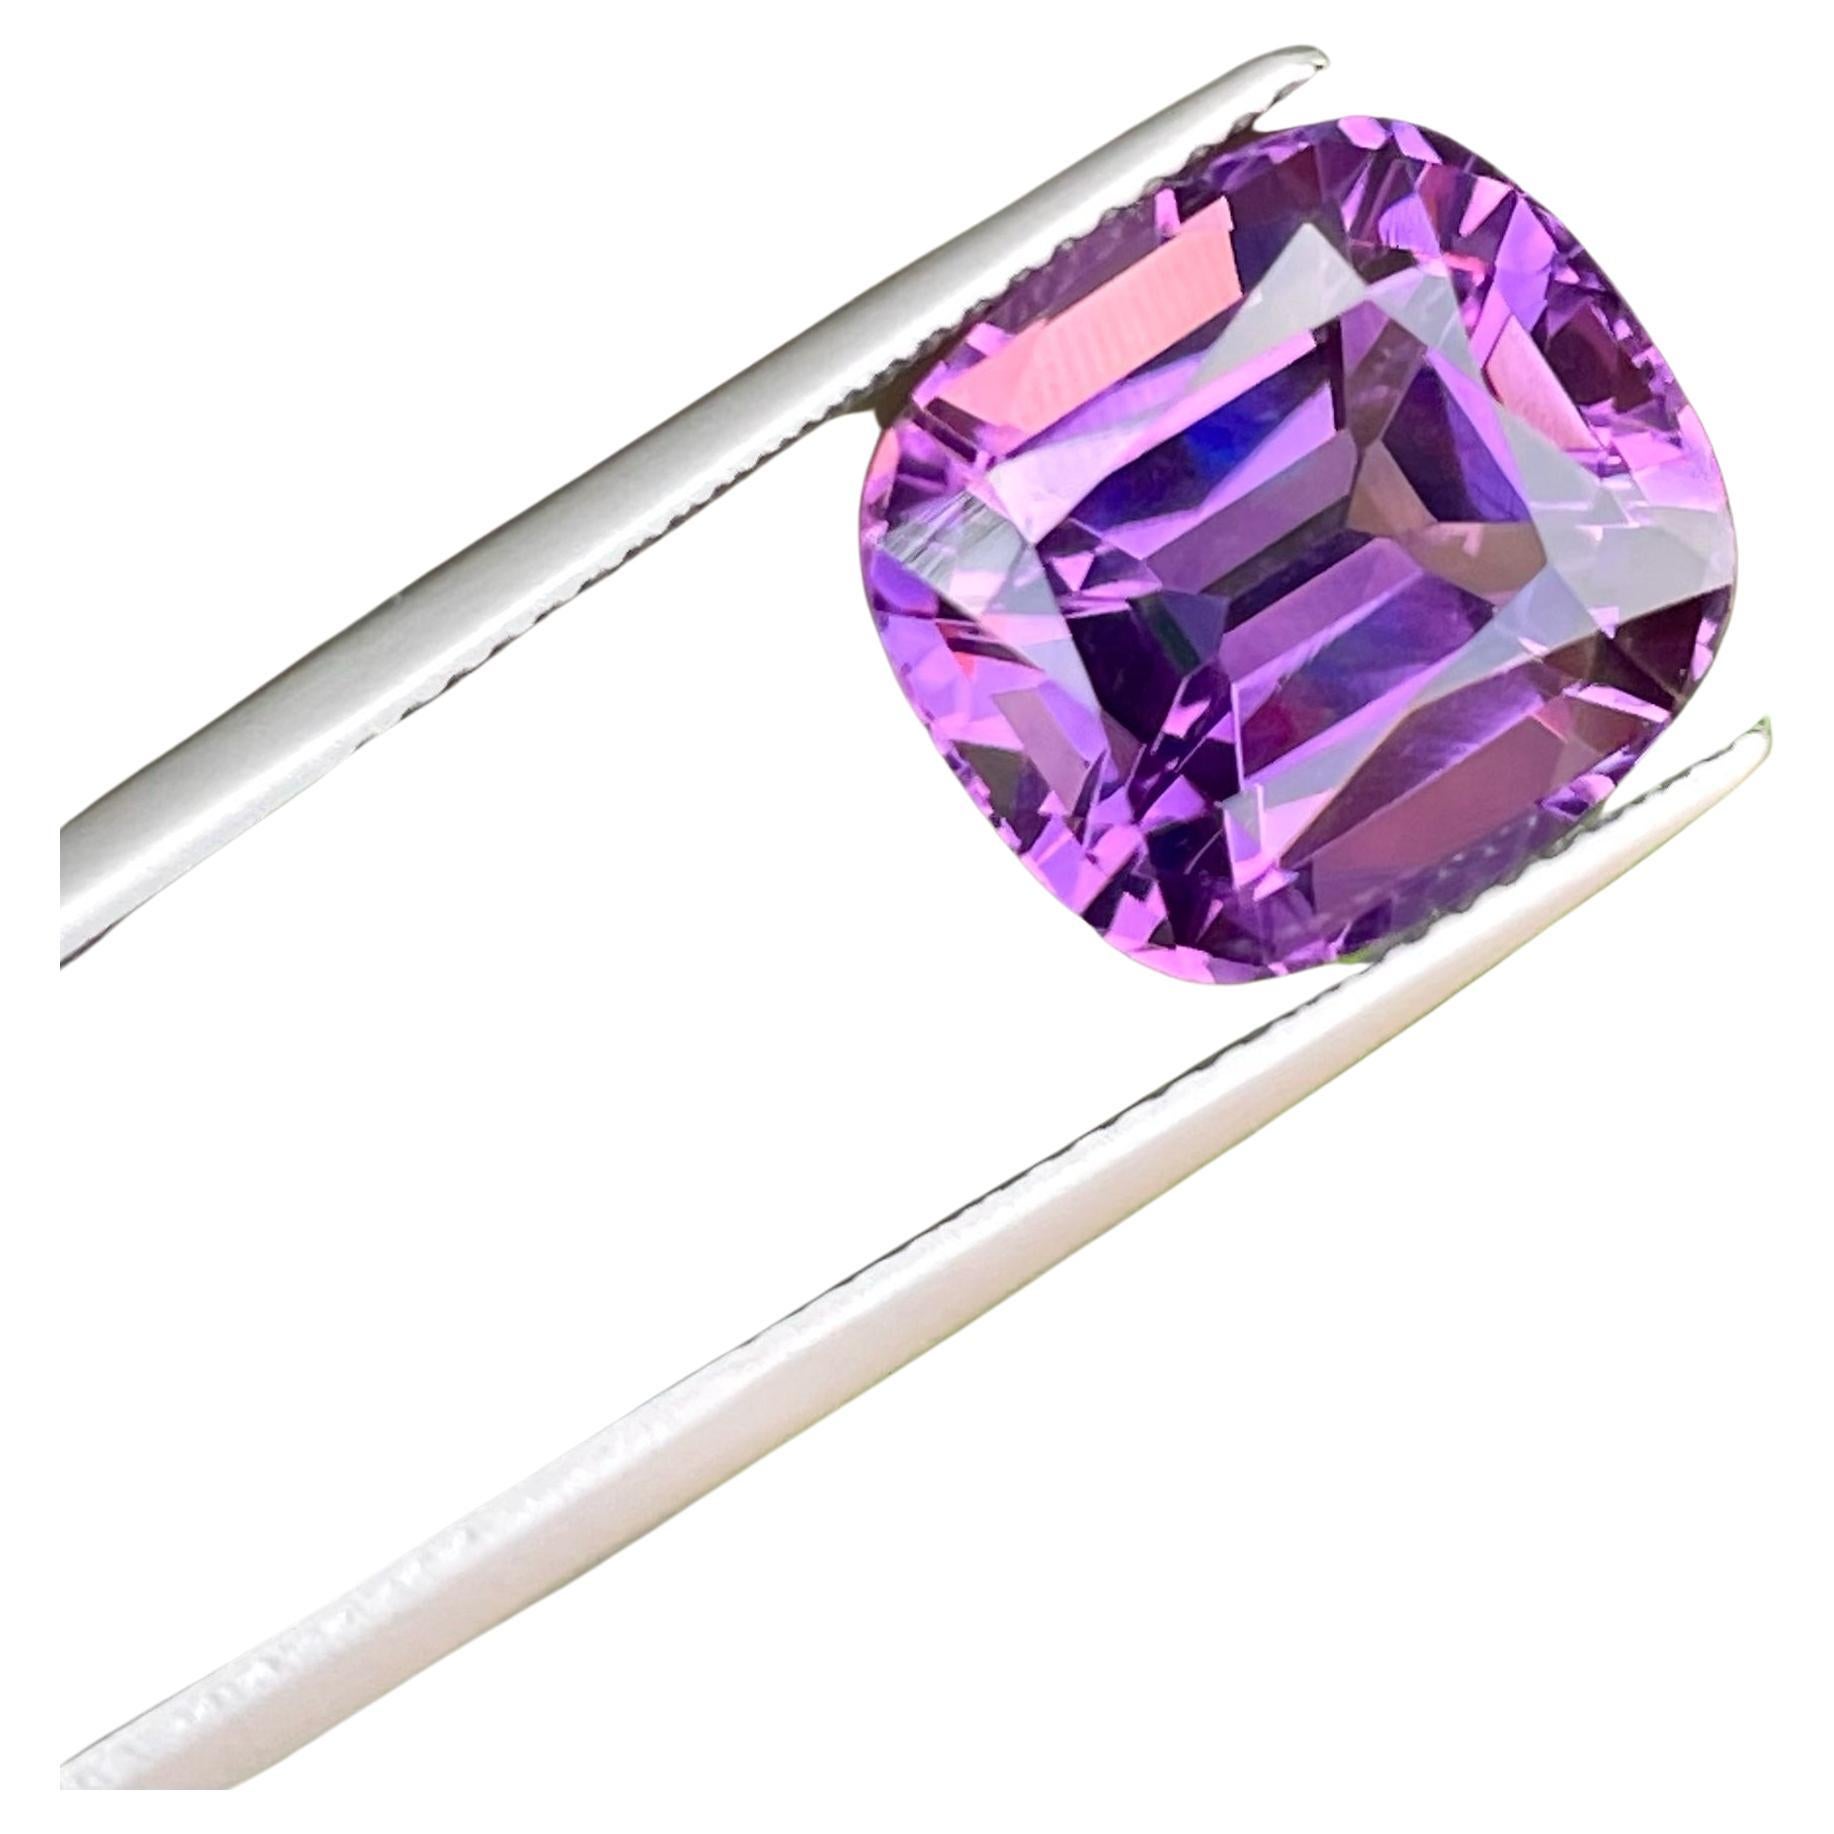 8.16 Carats Cushion-Cut Soft Purple Amethyst Gemstone For Sale